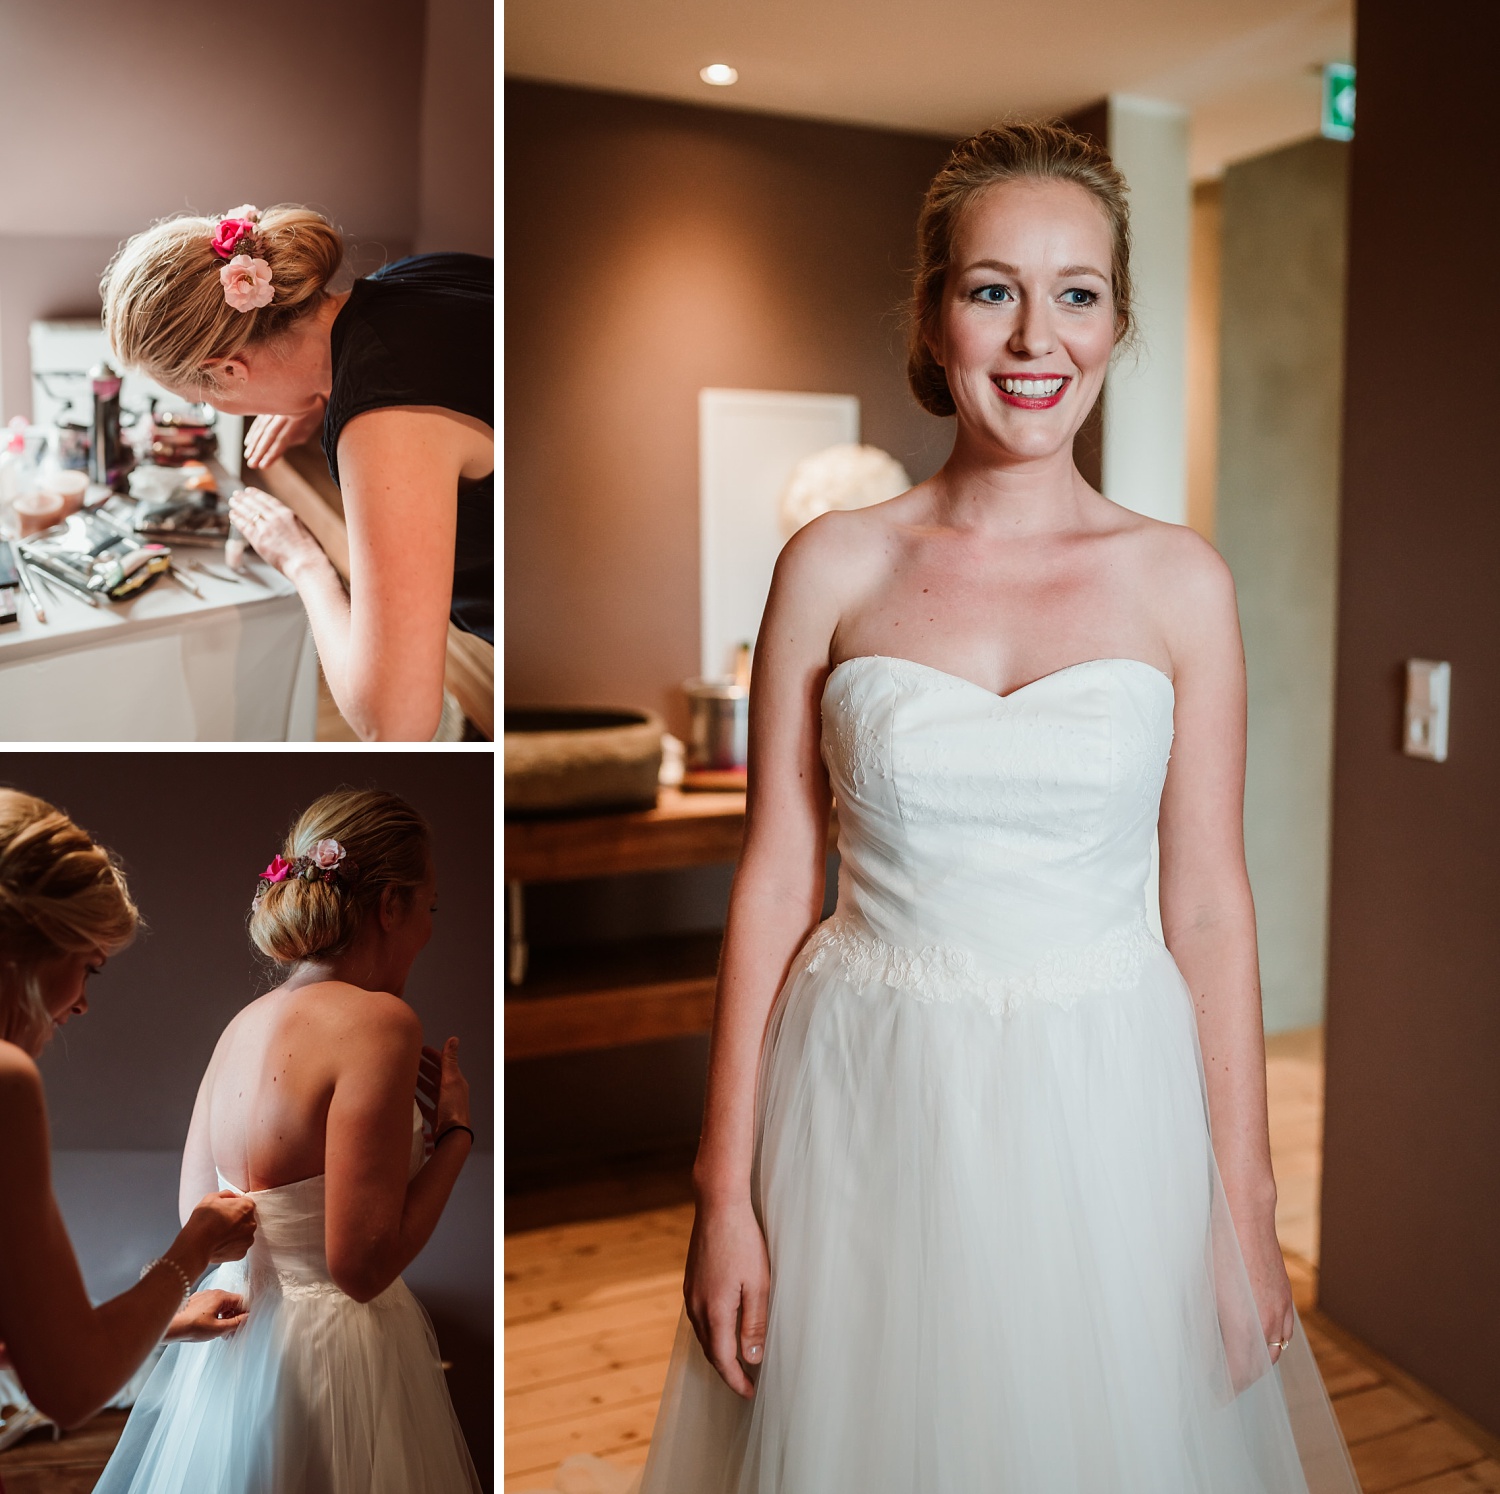 Getting Ready | Braut | Hochzeitsfotograf Aachen